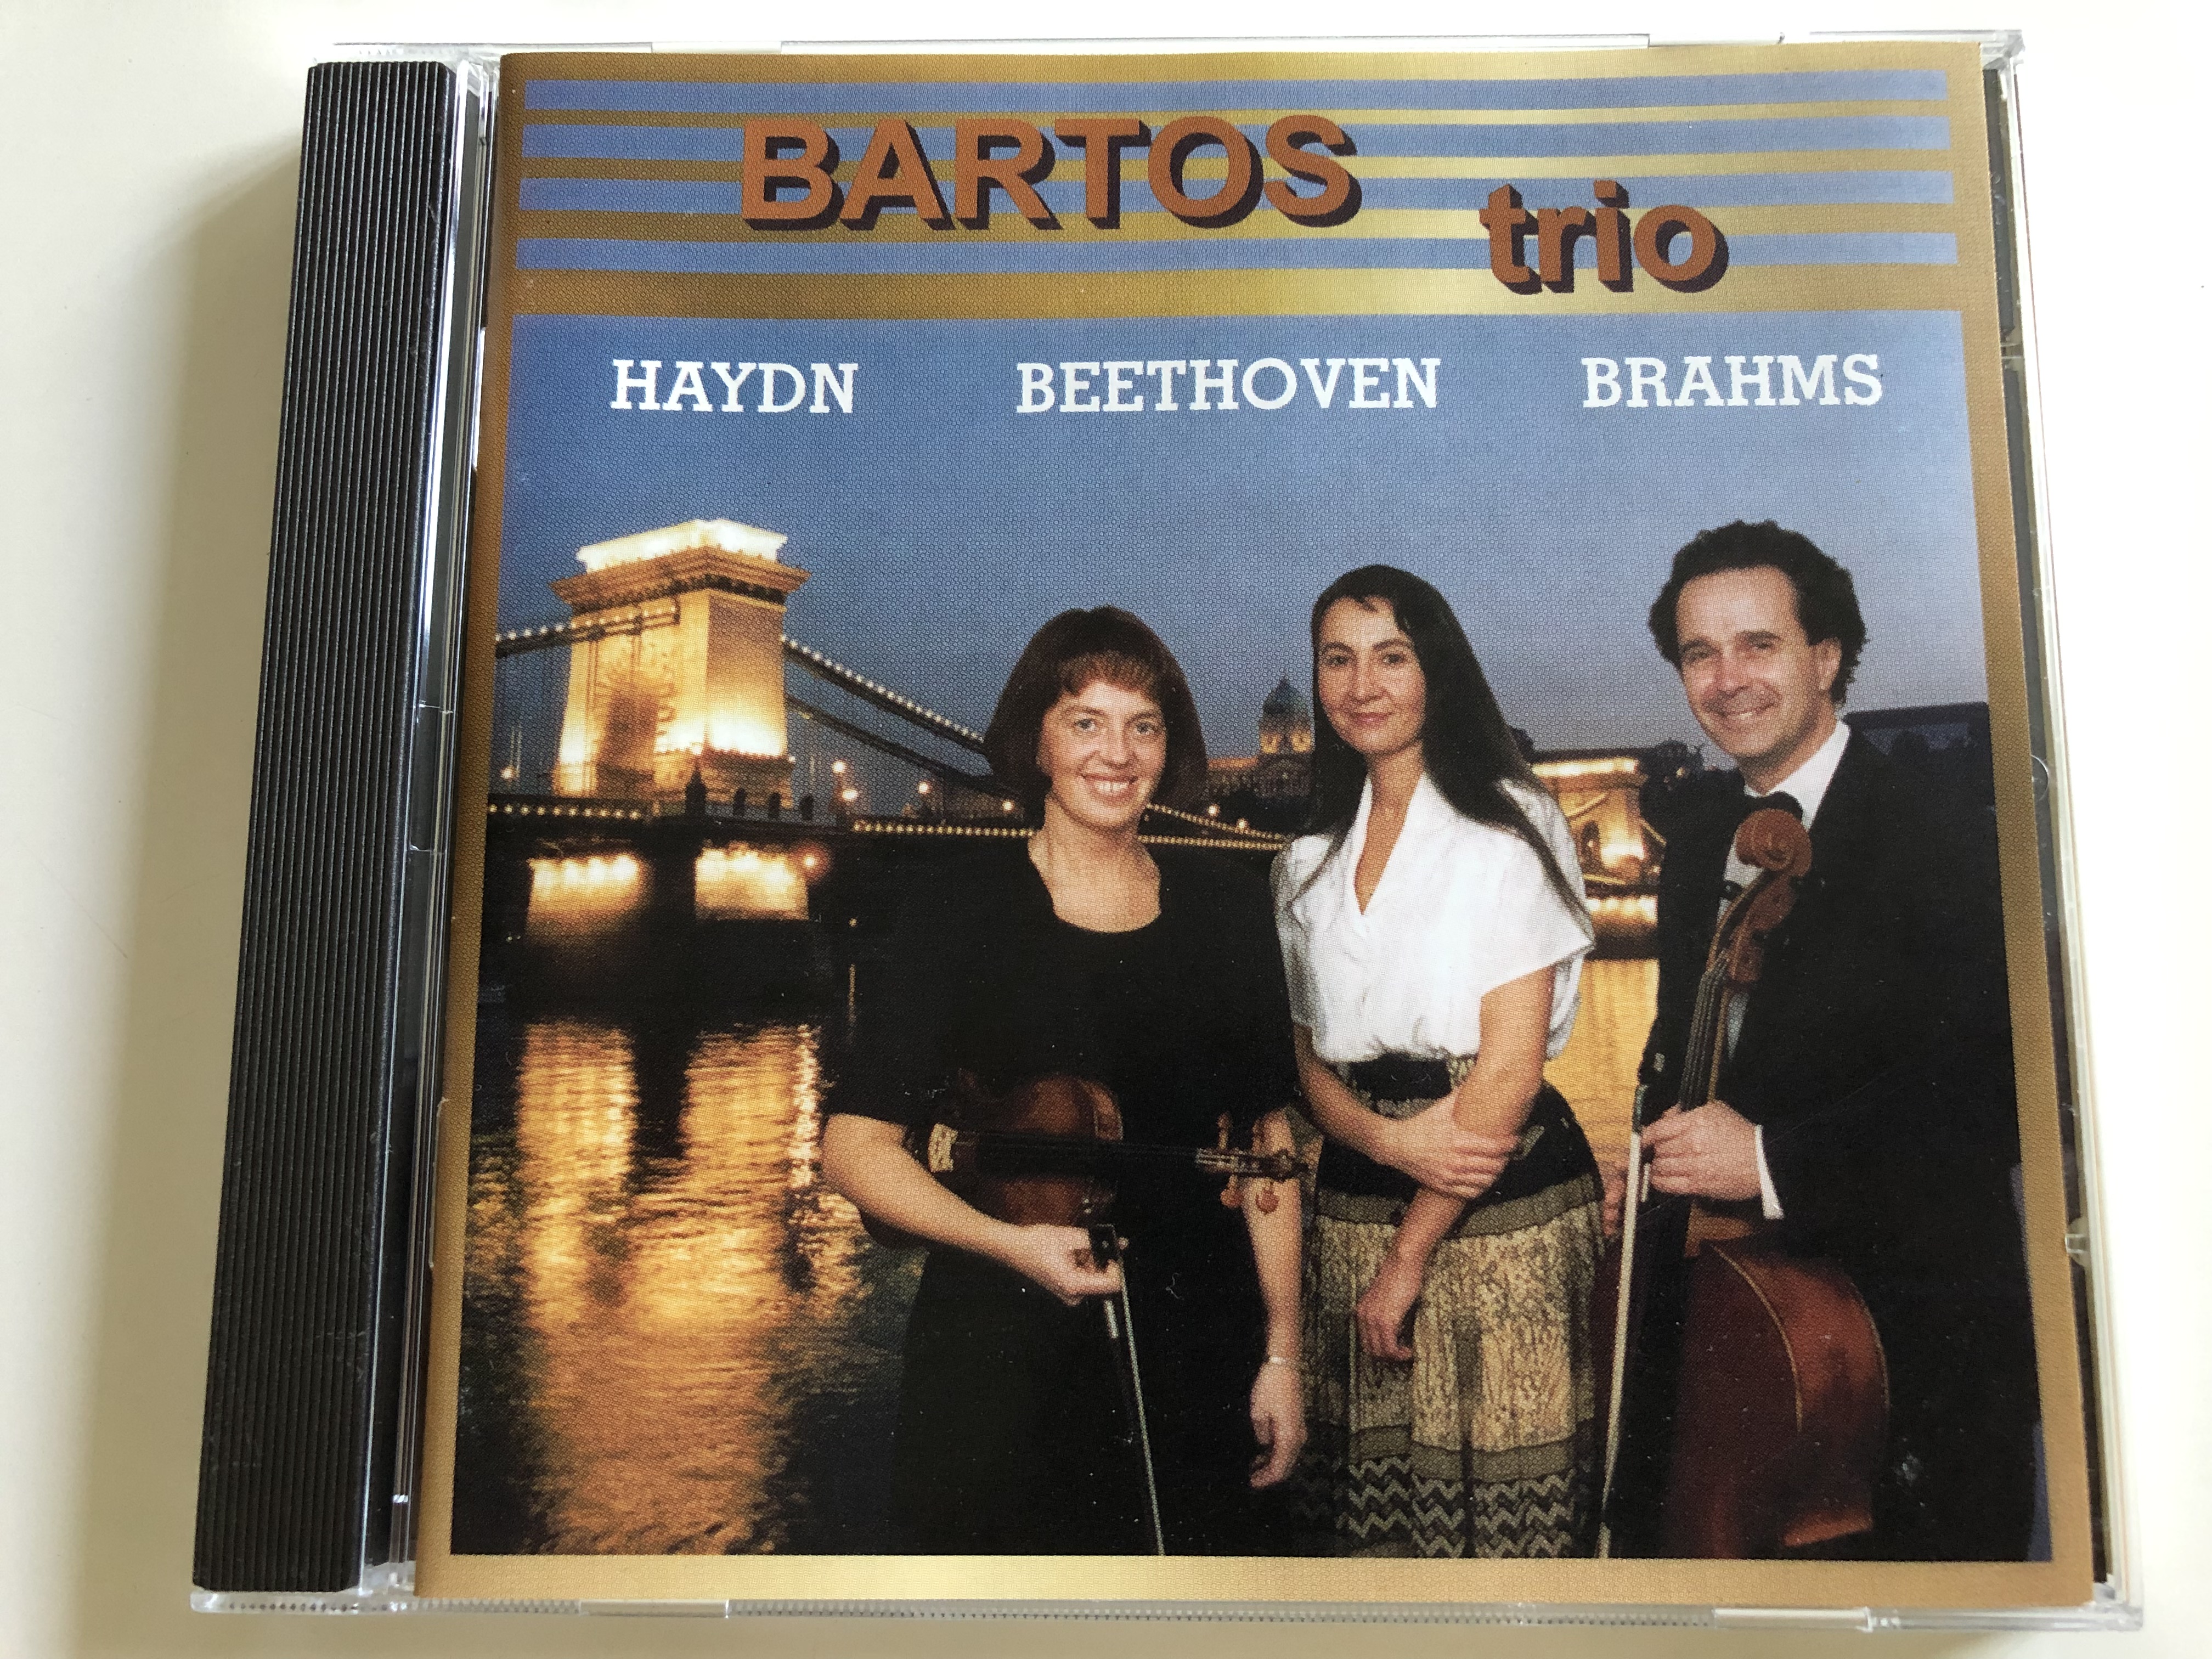 bartos-trio-haydn-beethoven-brahms-audio-cd-1997-galina-danilova-violin-csaba-bartos-violoncello-irina-ivanitskaia-piano-1-.jpg